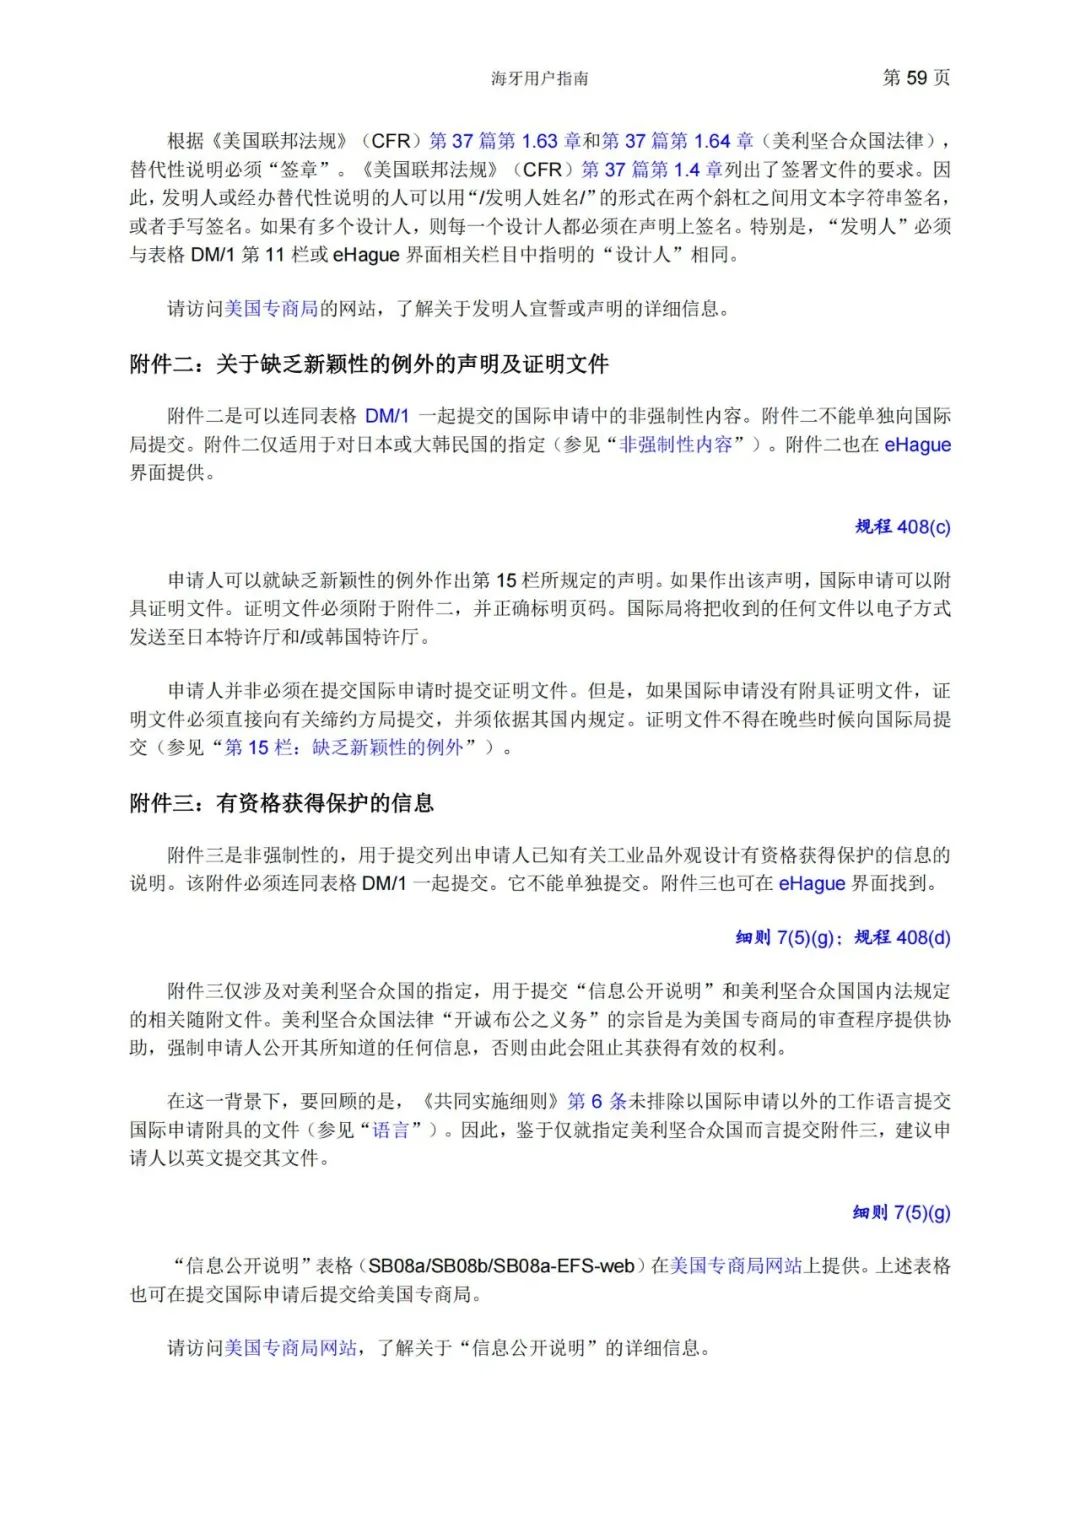 华为、小米等21家中国企业通过海牙体系提交了50件外观设计国际注册申请（附：海牙用户指南）